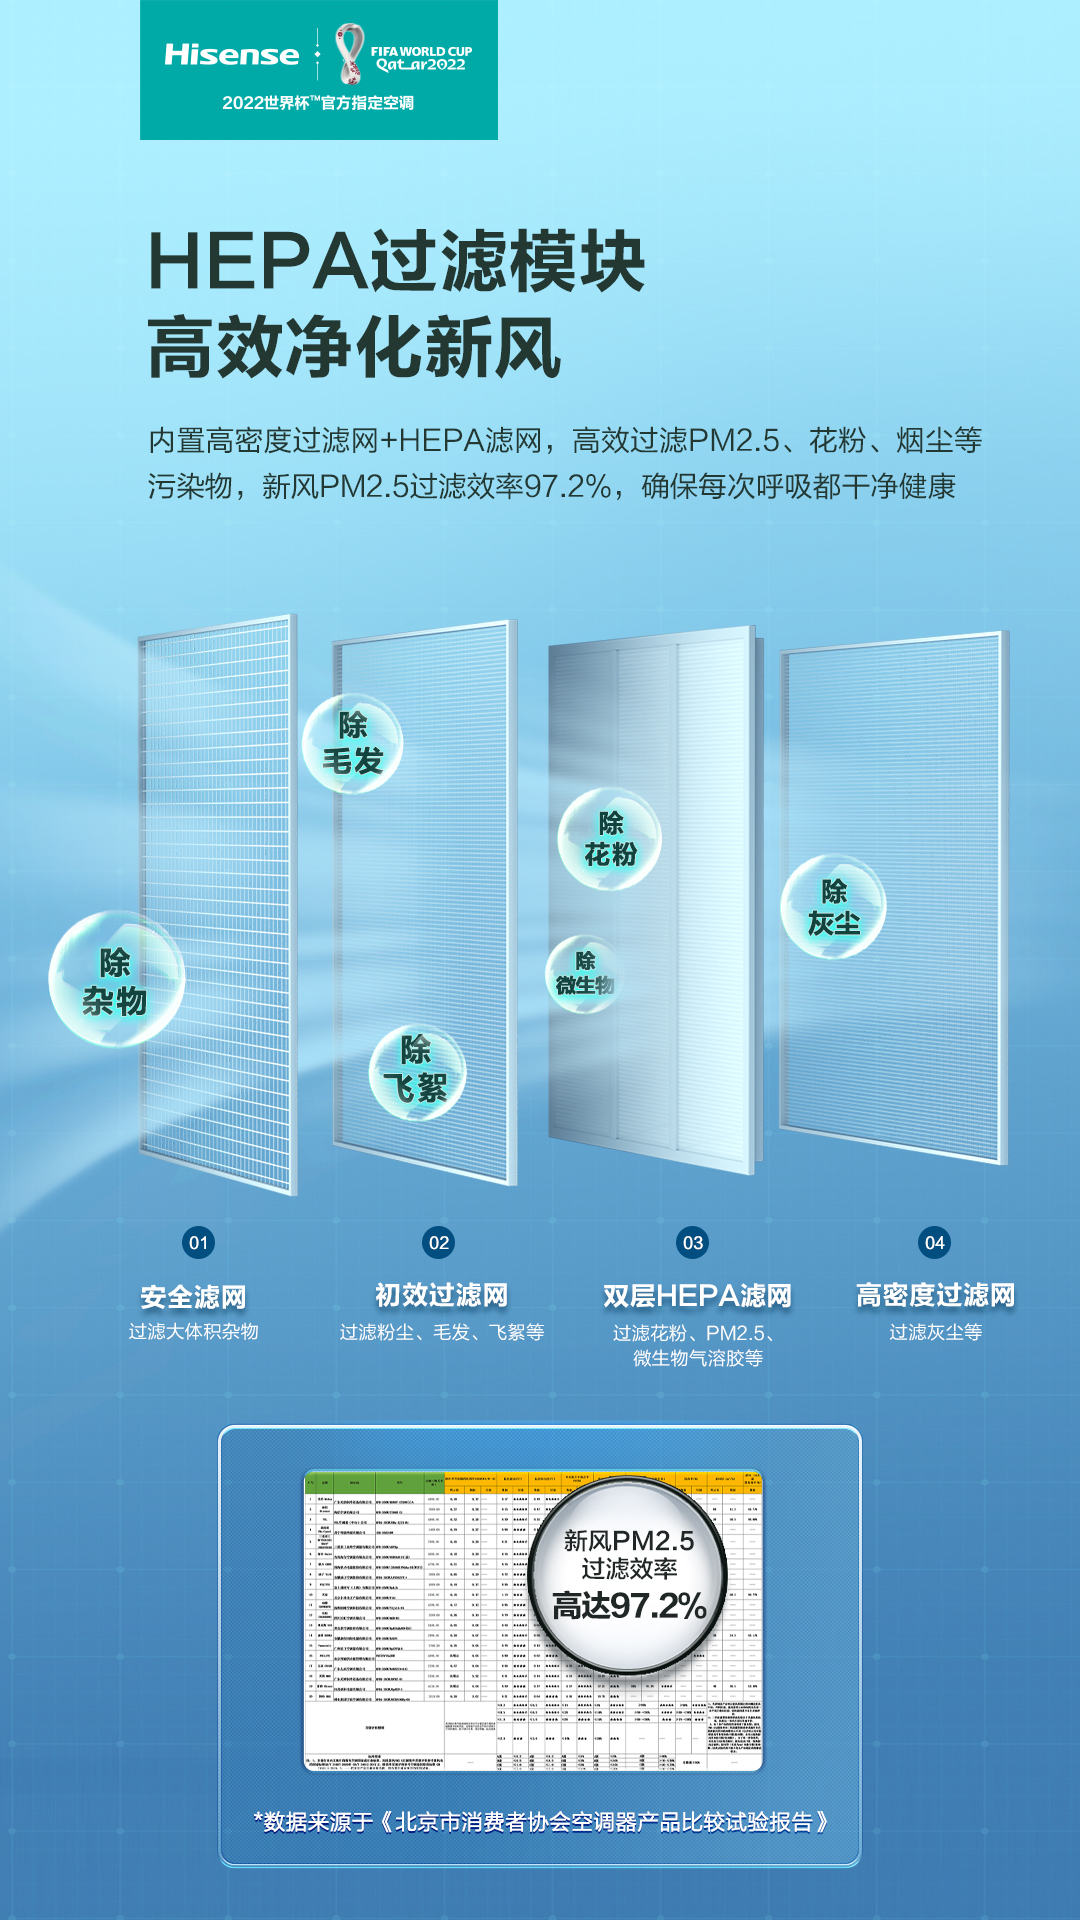 空调选购标准比拼，海信新风空调X700凭实力获北京消费者协会首肯 智能公会